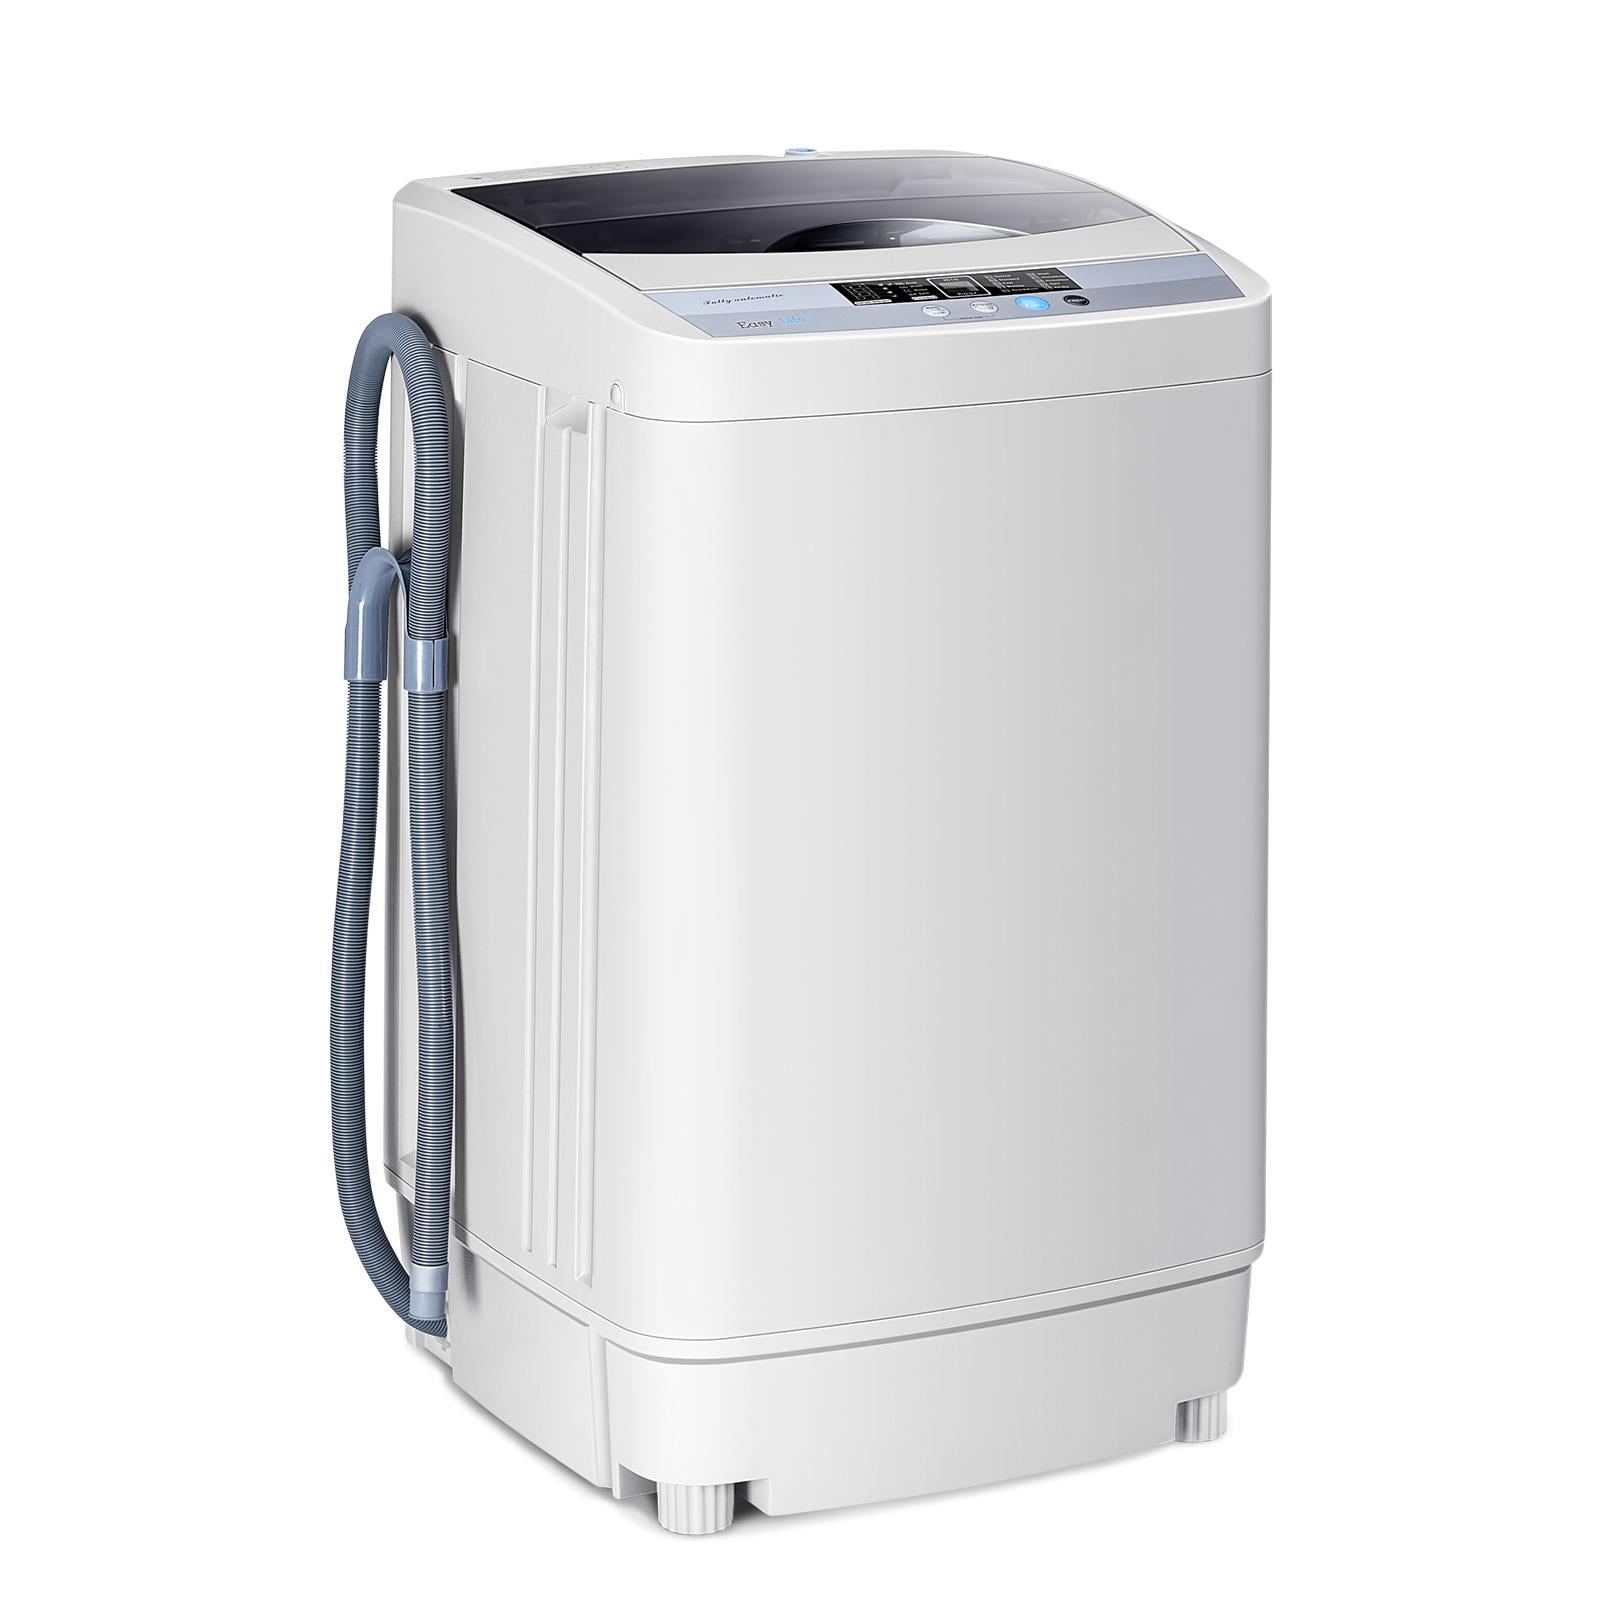 Giantex Washing Machine Review and Mod 